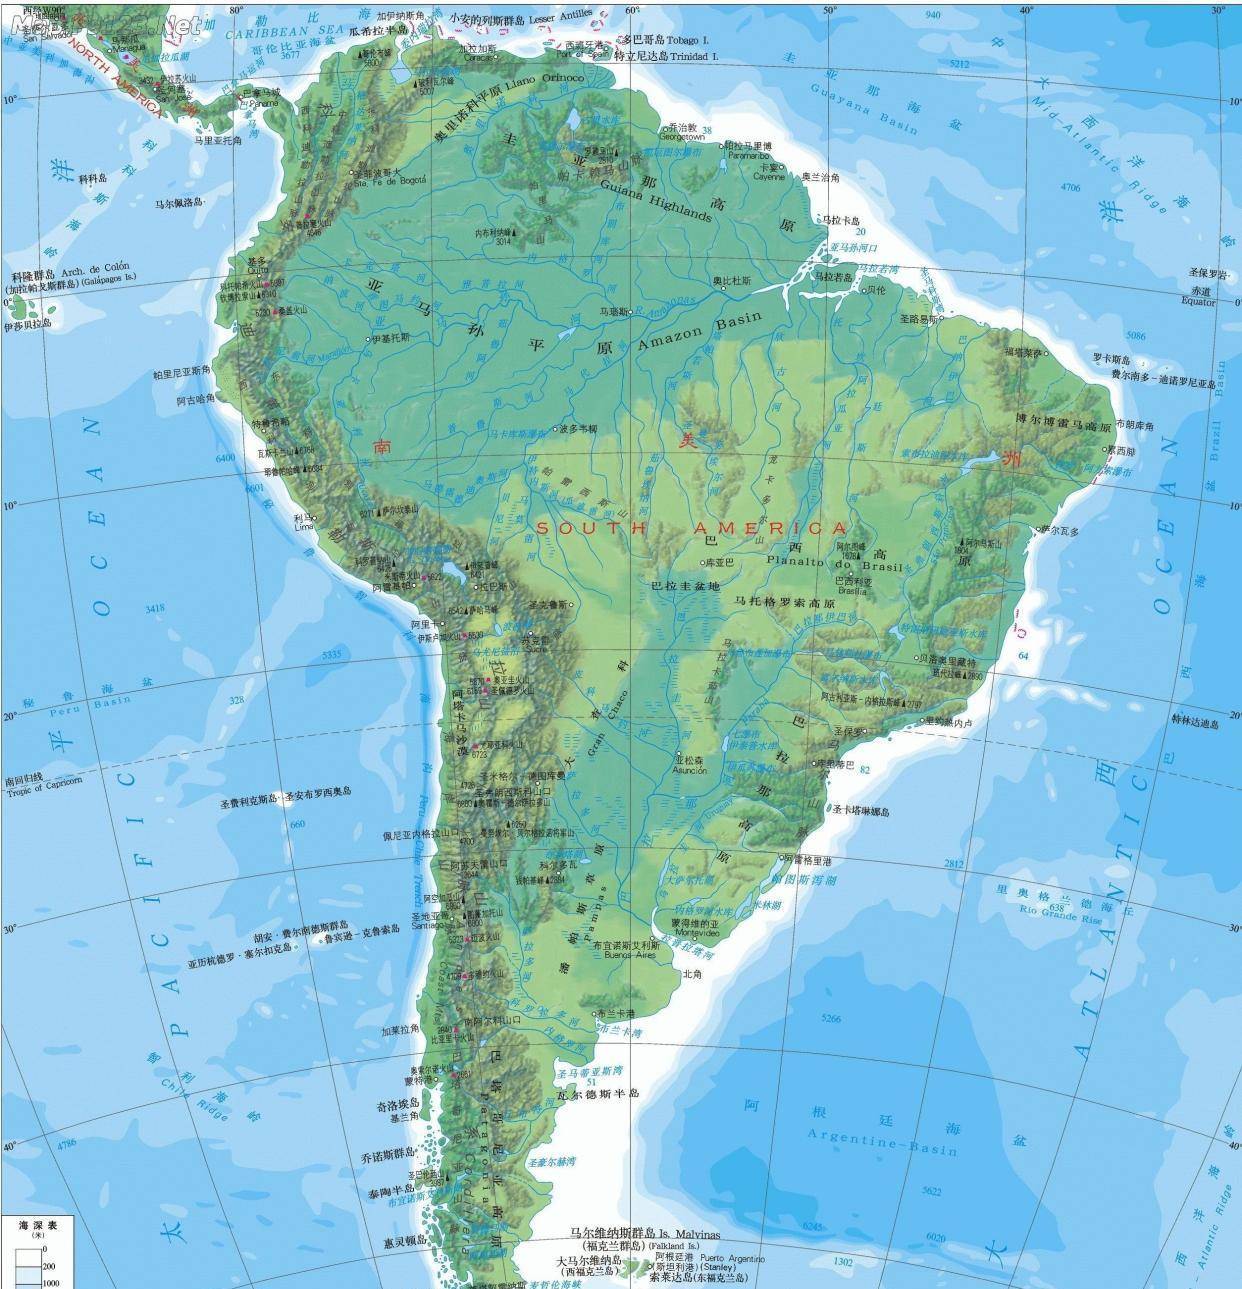 南亚美利加洲,简称南美洲,位于南半球,西半球